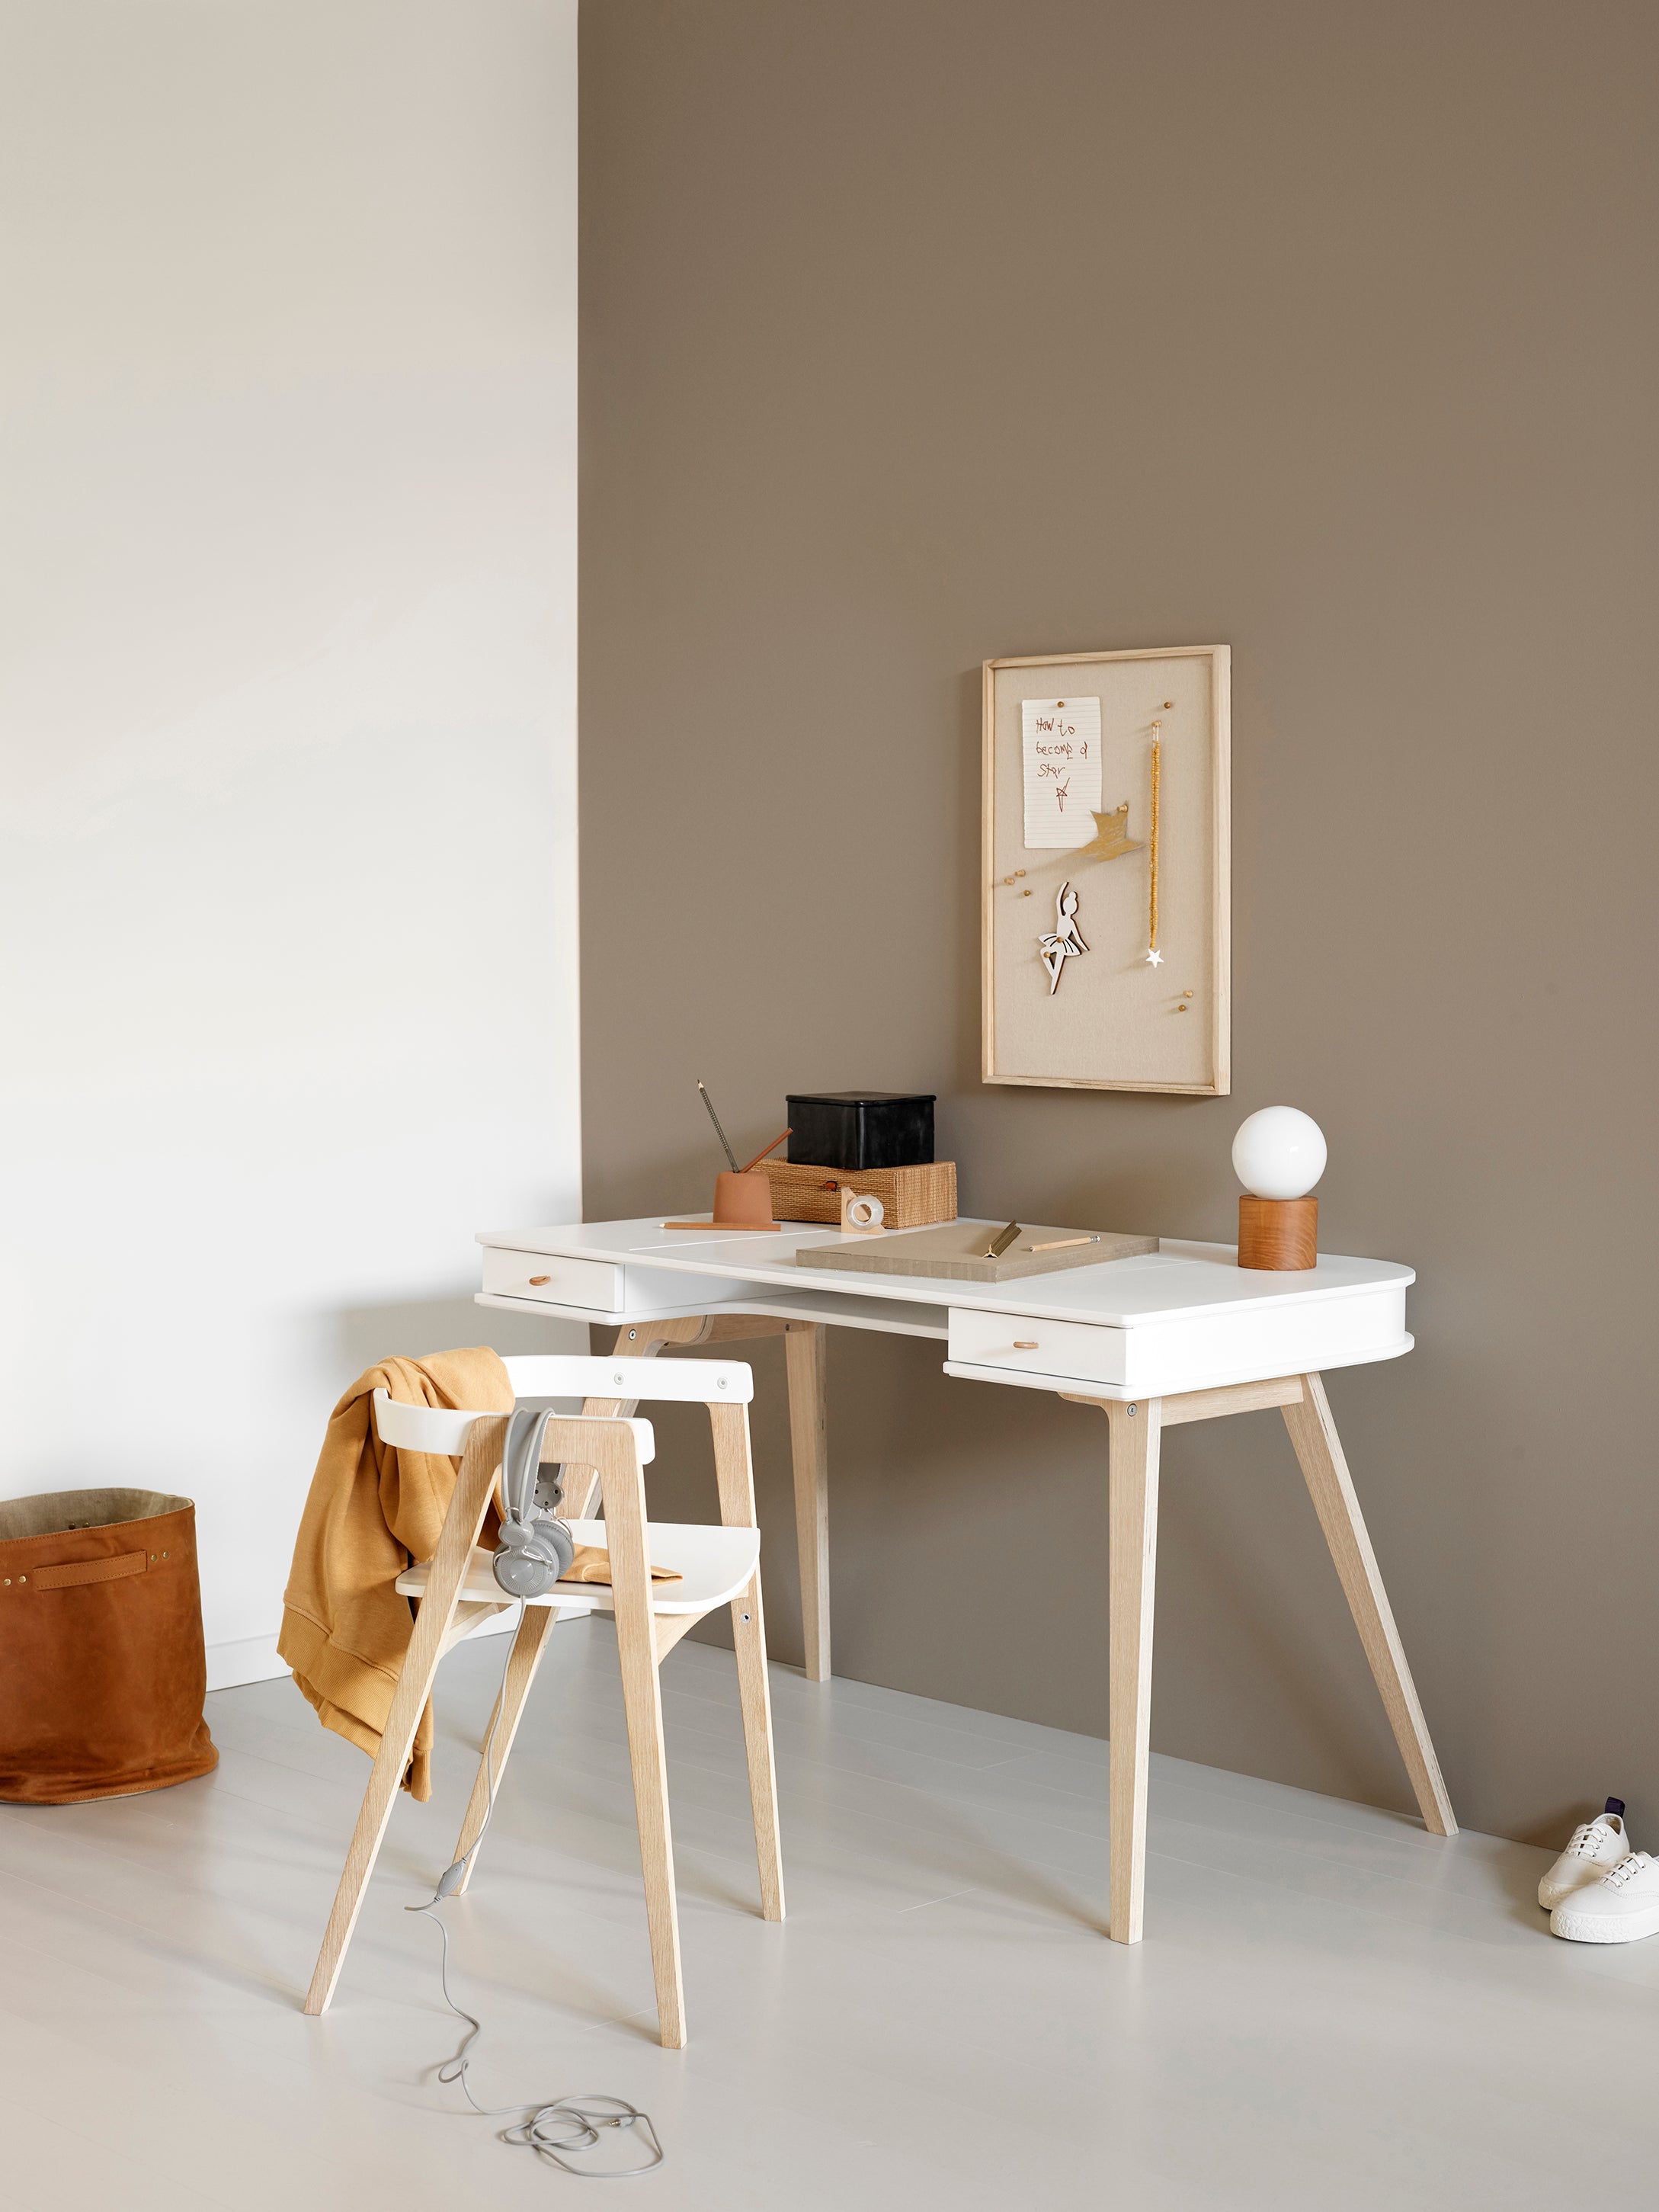 Junior (66cm) legs for wood desk by Oliver Furniture